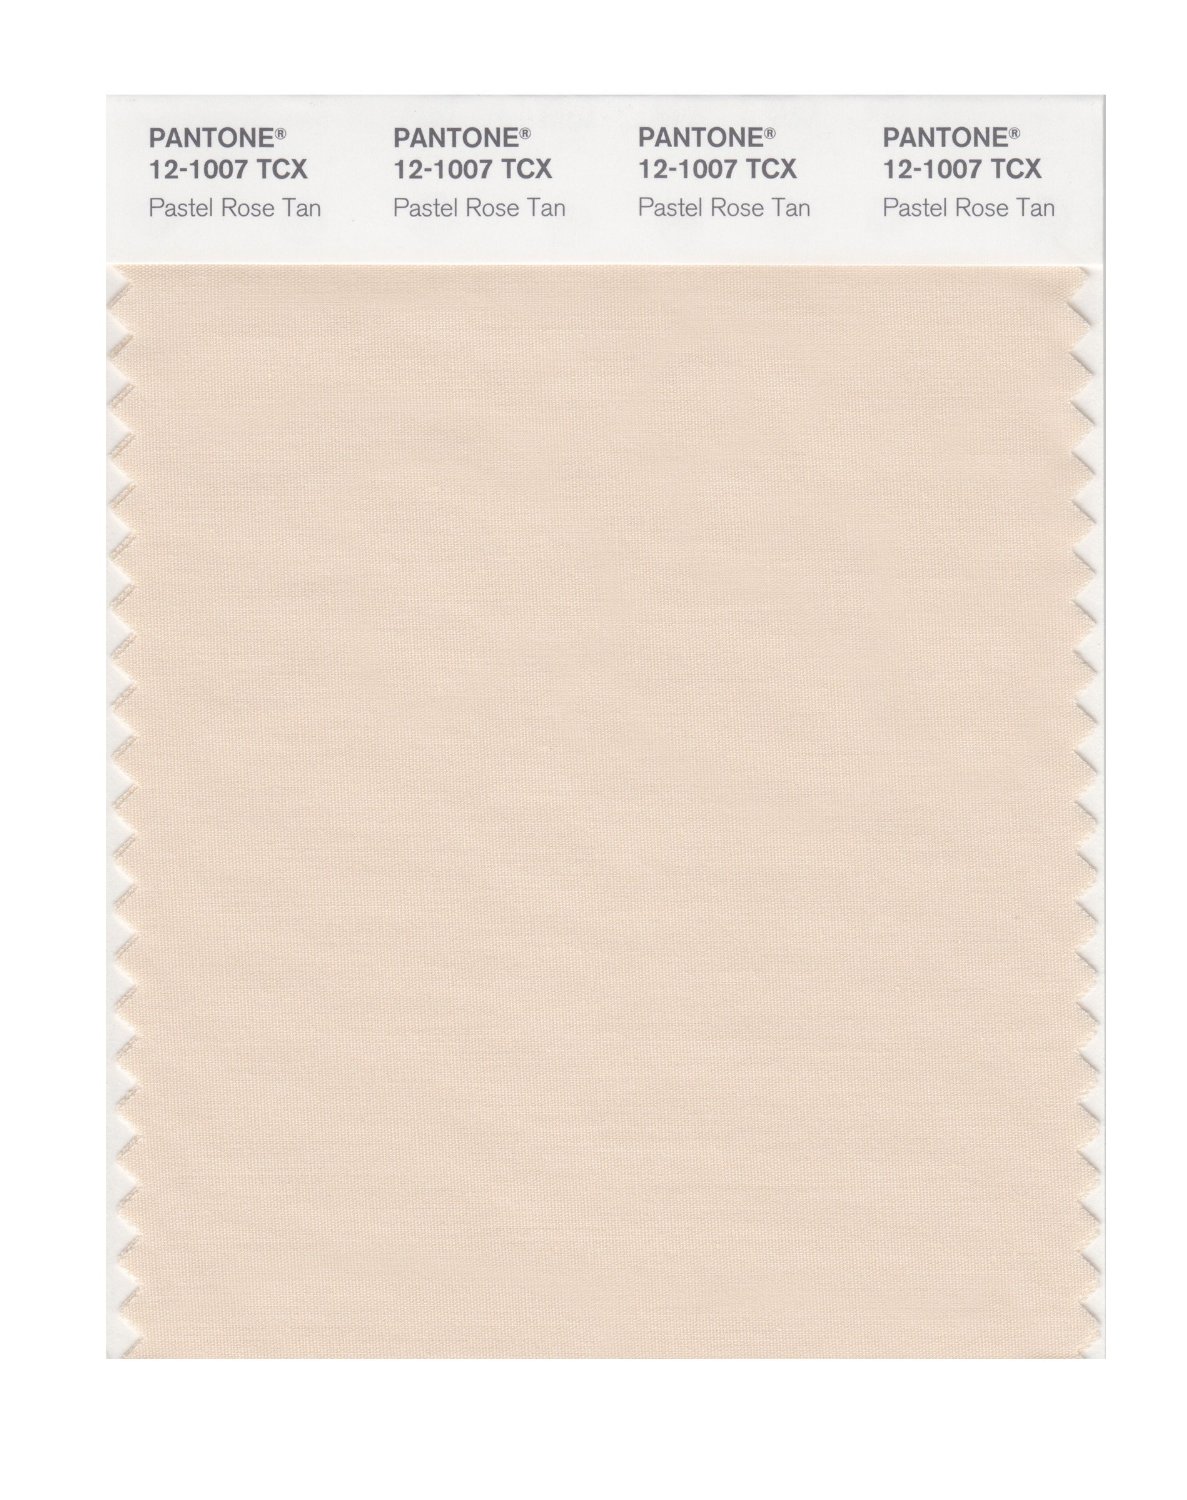 Pantone Cotton Swatch 12-1007 Pastel Rose Tan